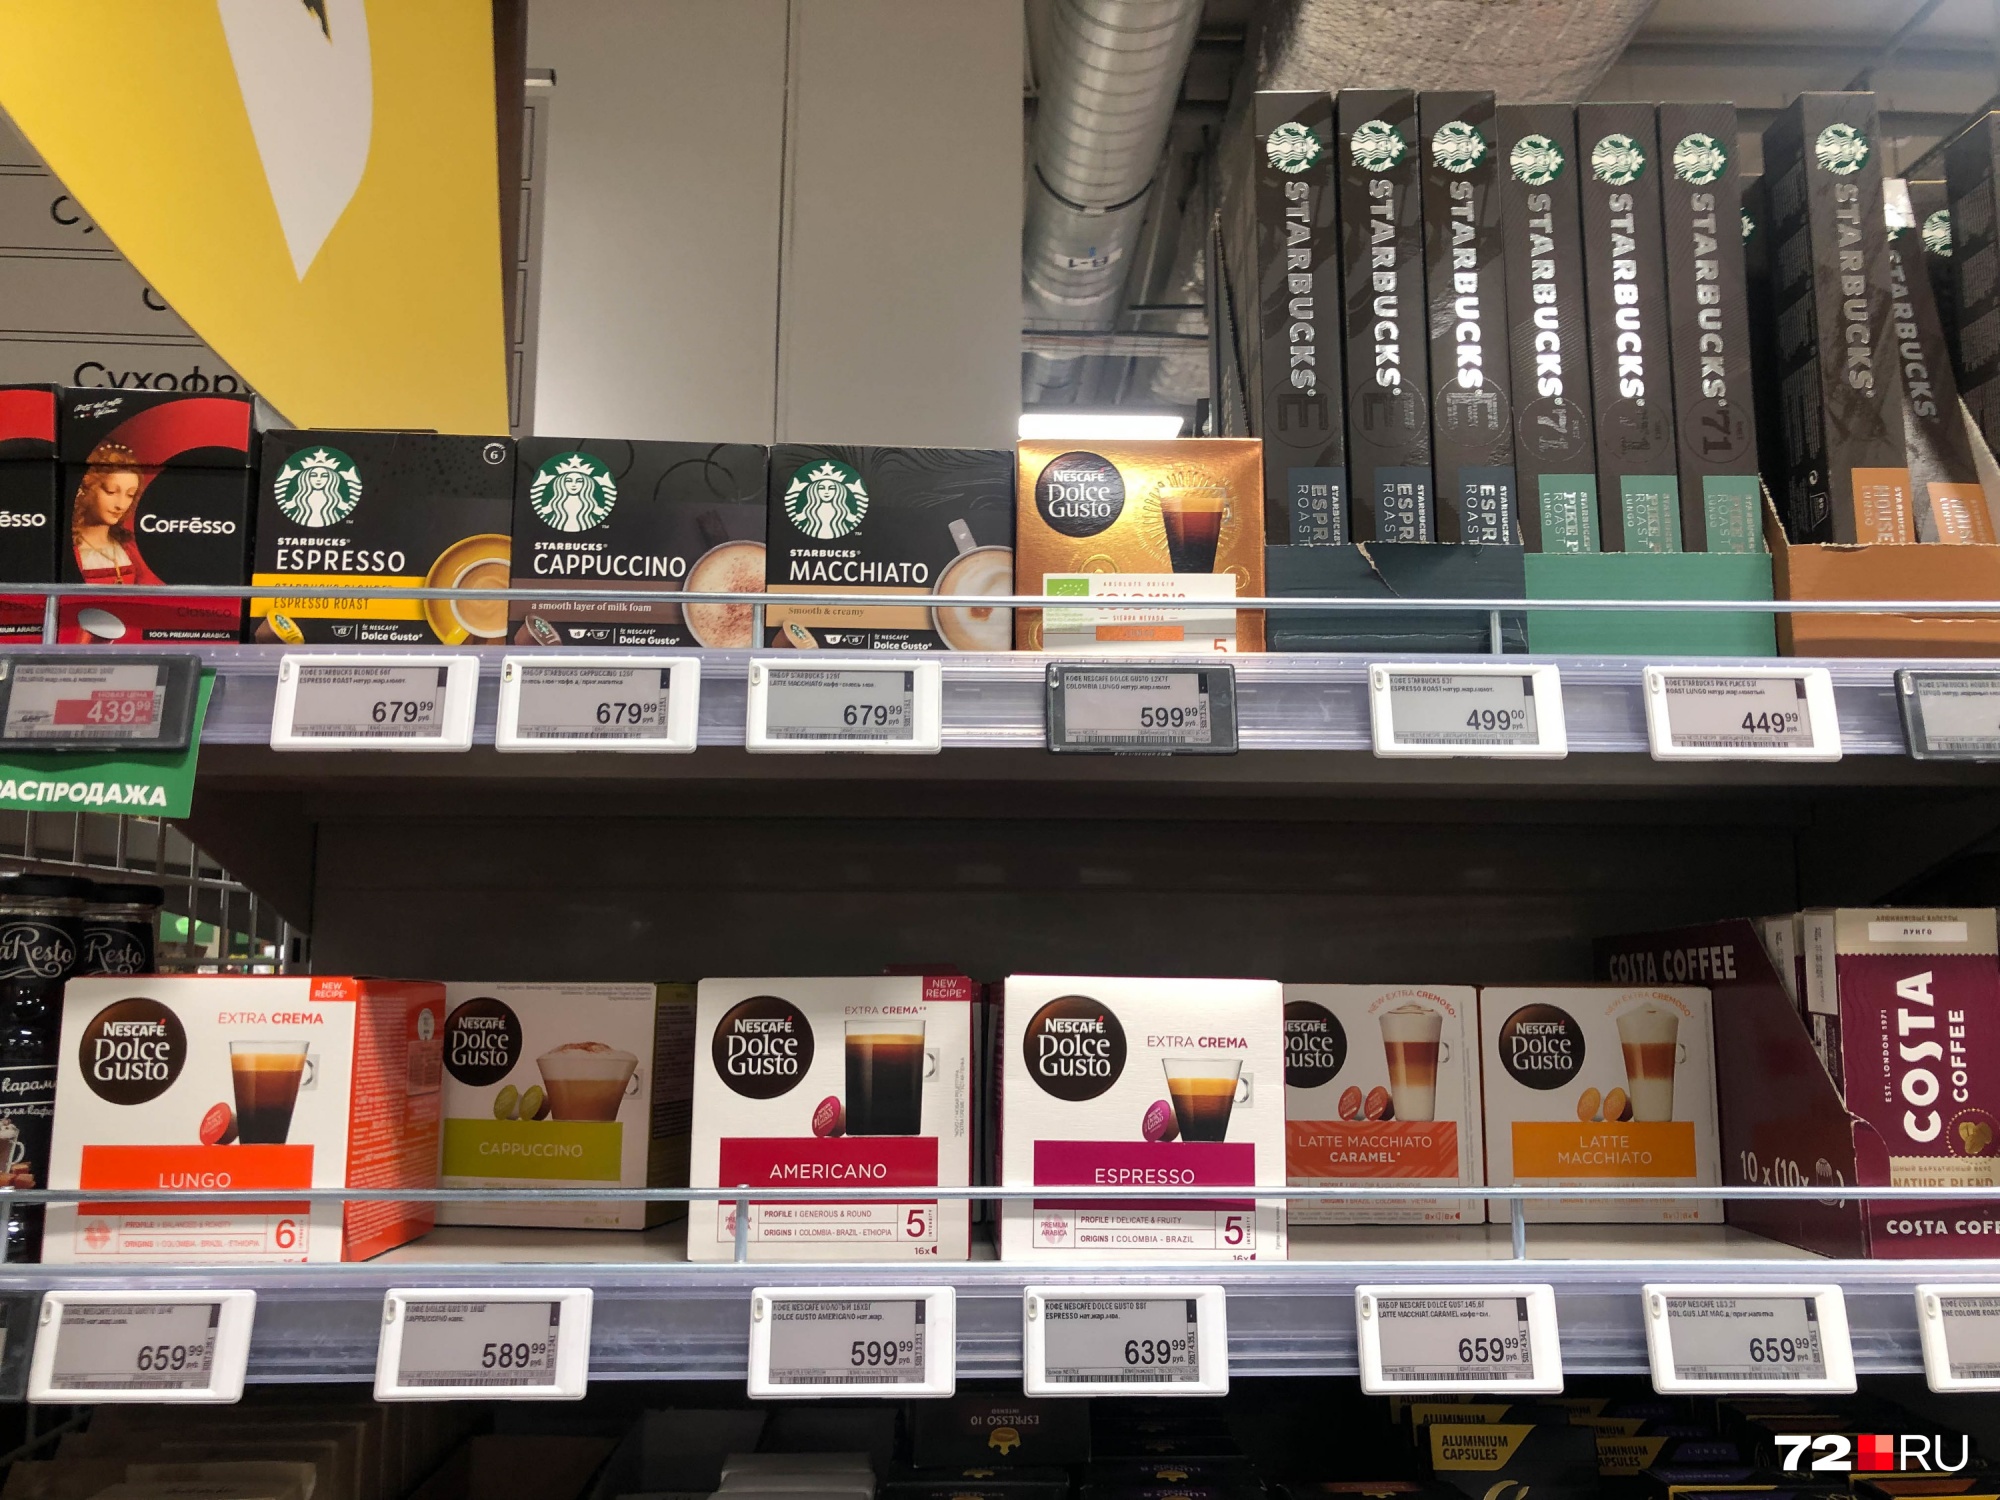 Капсулы Nestle для кофемашины — от 589 до 659 рублей за упаковку, Starbucks — чуть дороже